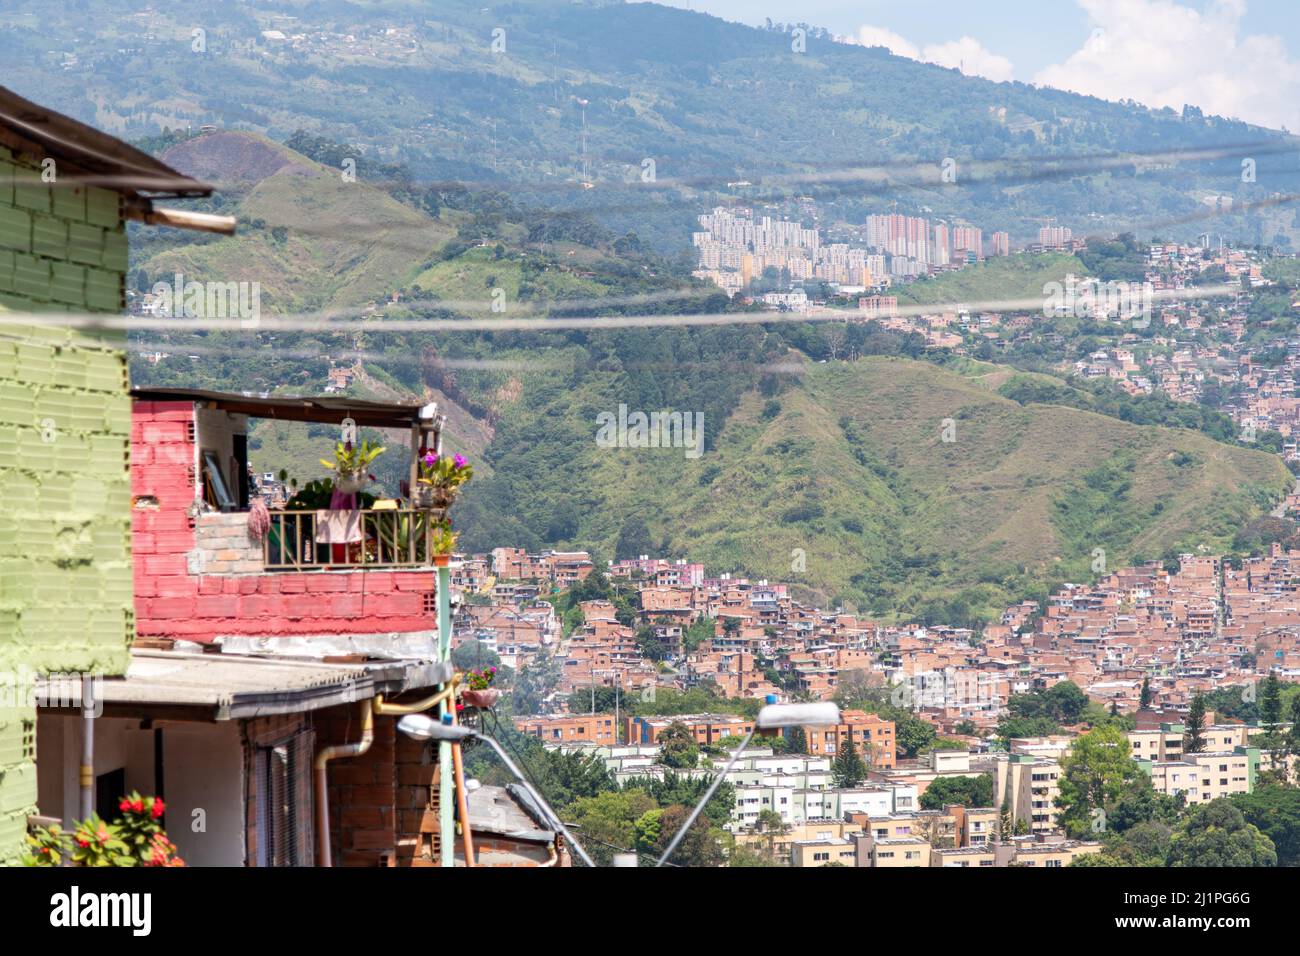 The Comuna 13 district in Medellin, Colombia Stock Photo